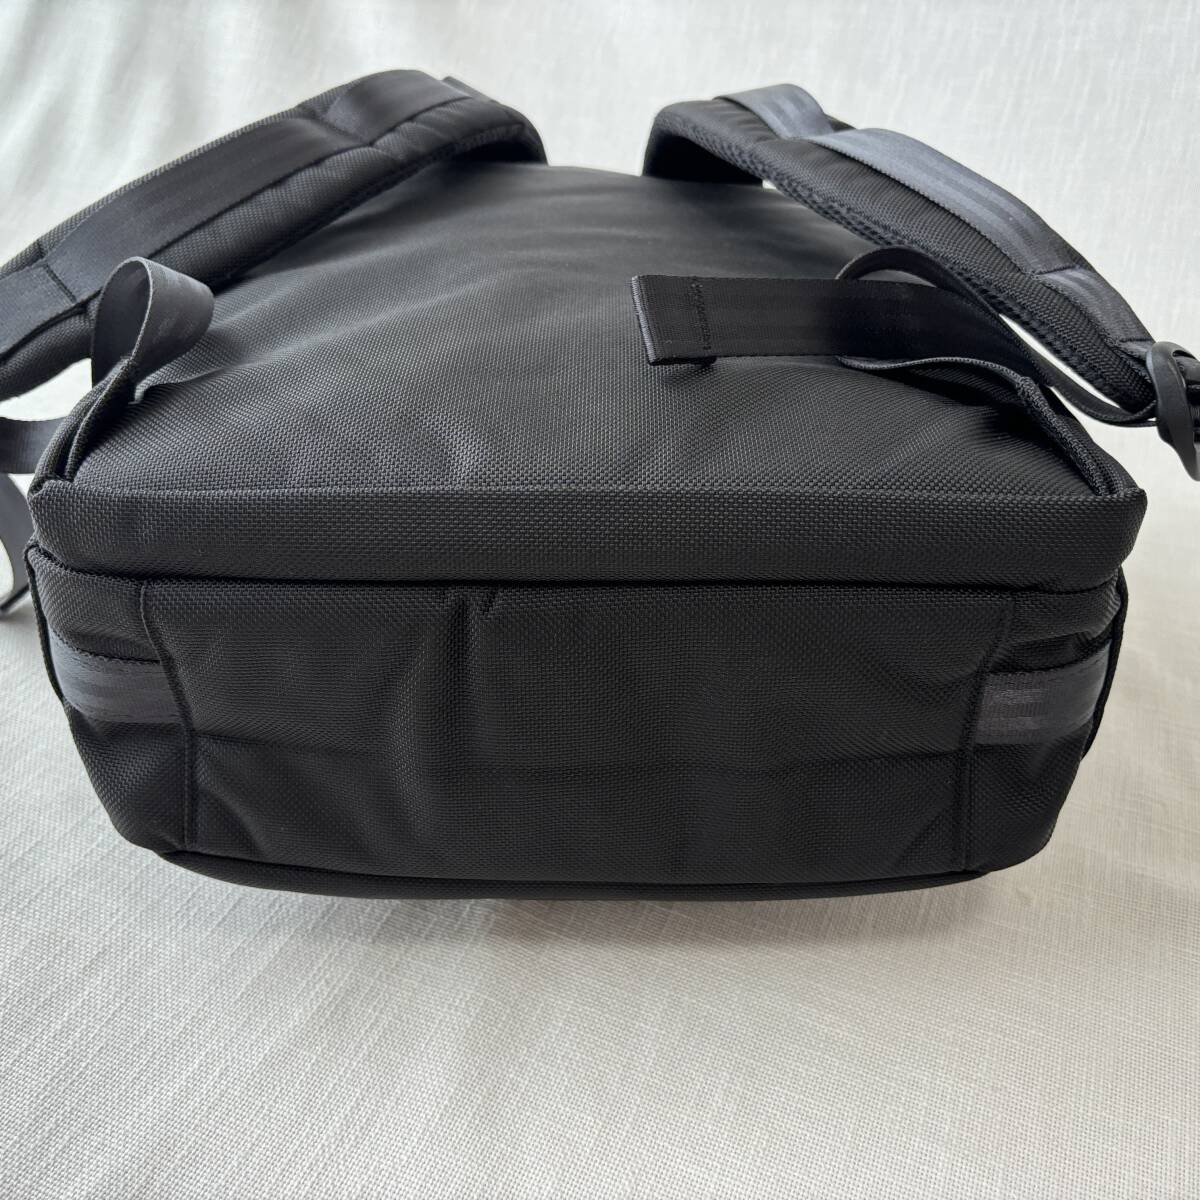 #1 иен ~ < прекрасный товар!!># Manhattan Poe te-ji Black Label шероховатость палочка нейлон рюкзак рюкзак черный чёрный MP1282BL